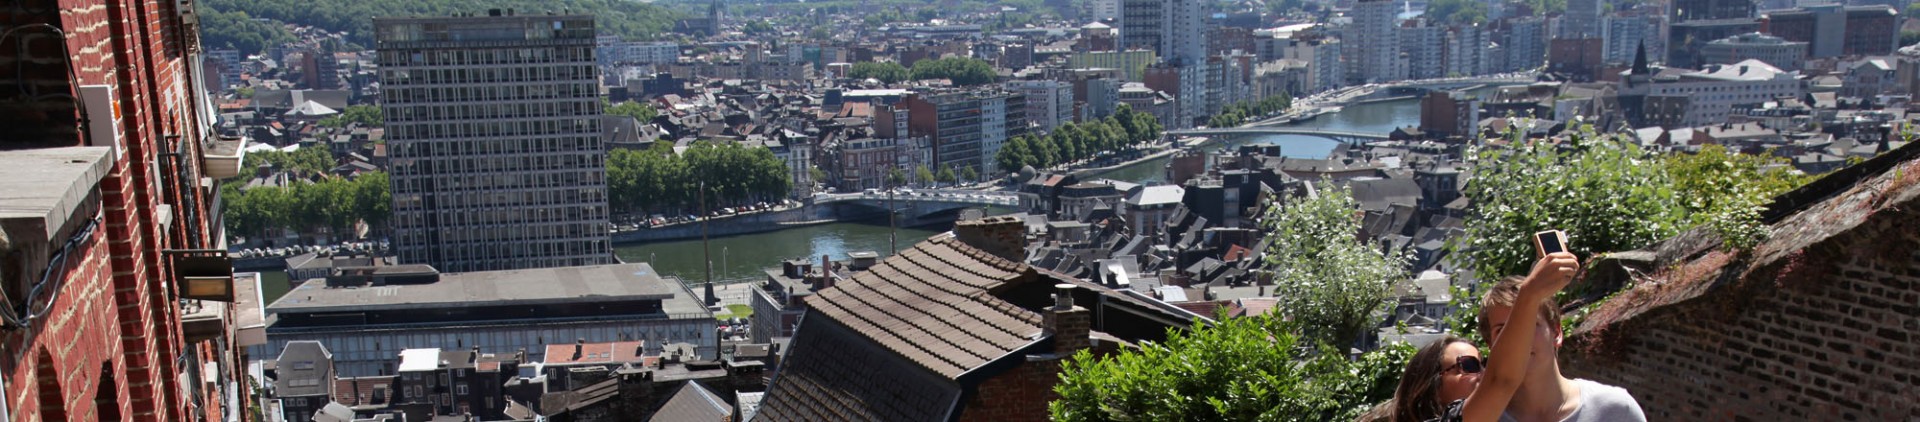 La province de Liège en images